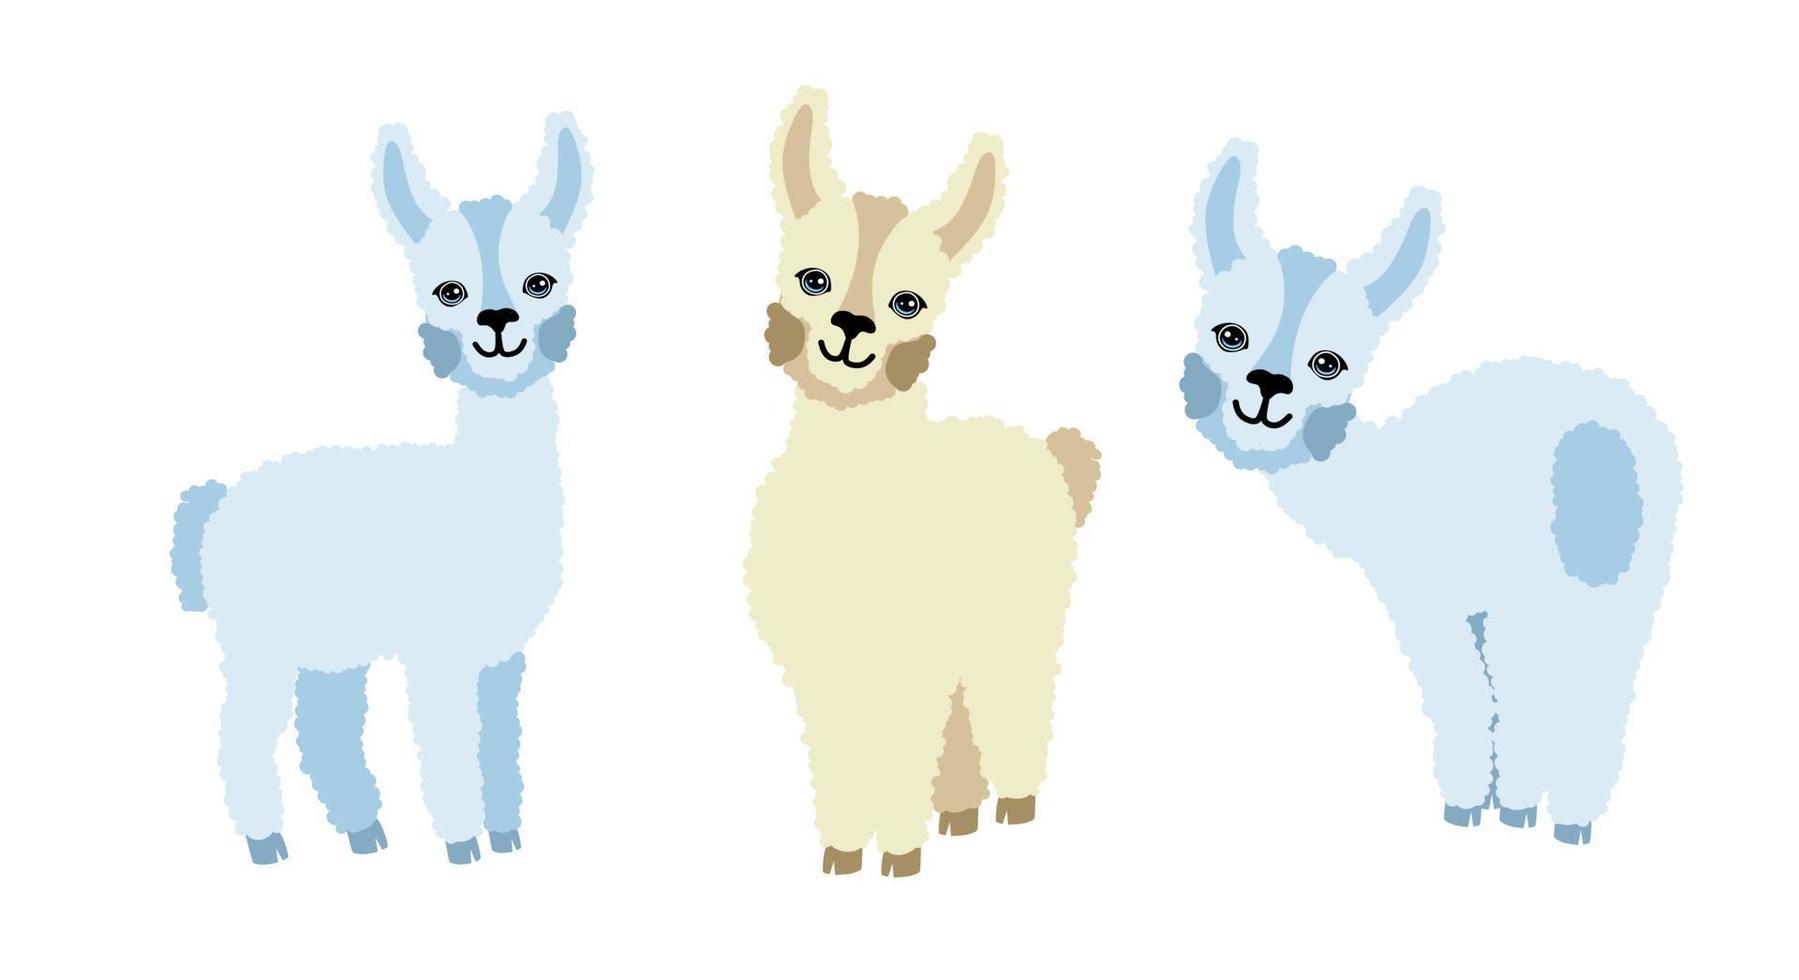 lhamas de alpaca conjunto de três em um fundo branco. para impressão em têxteis, lembranças e cartazes. ilustração vetorial. vetor